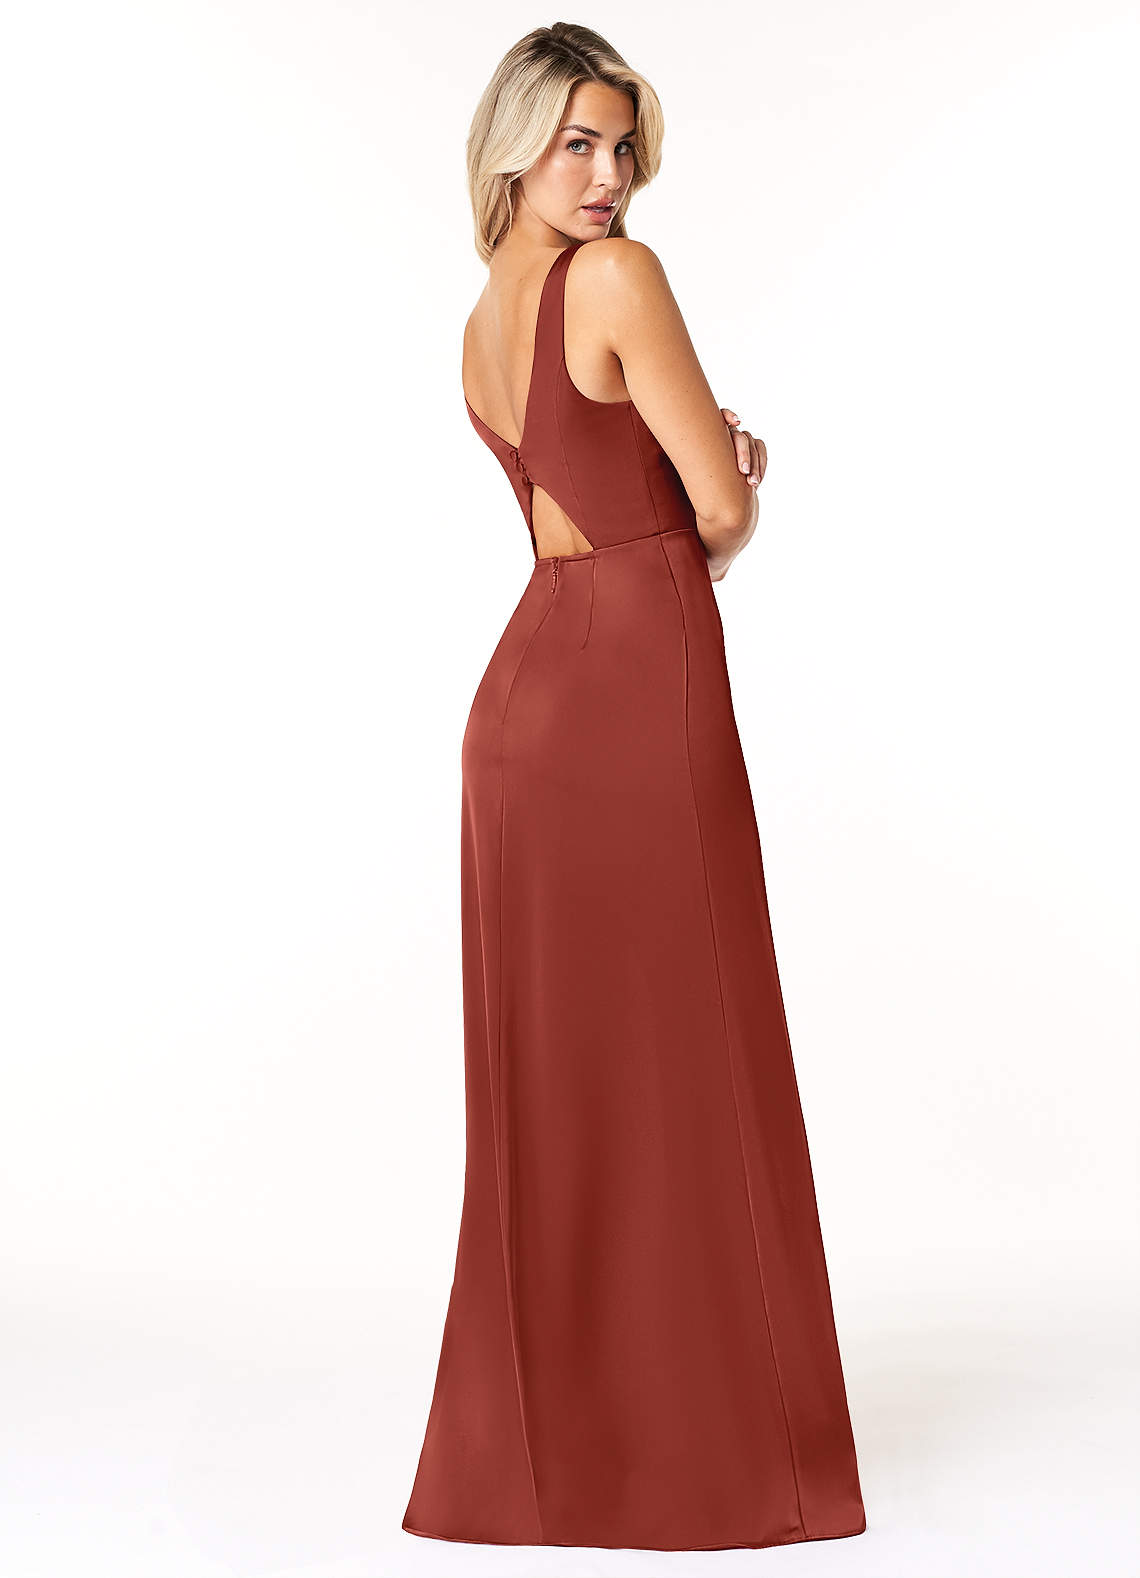 Azazie Jess Bridesmaid Dresses Sheath V-Neck Stretch Satin Floor-Length Dress image1